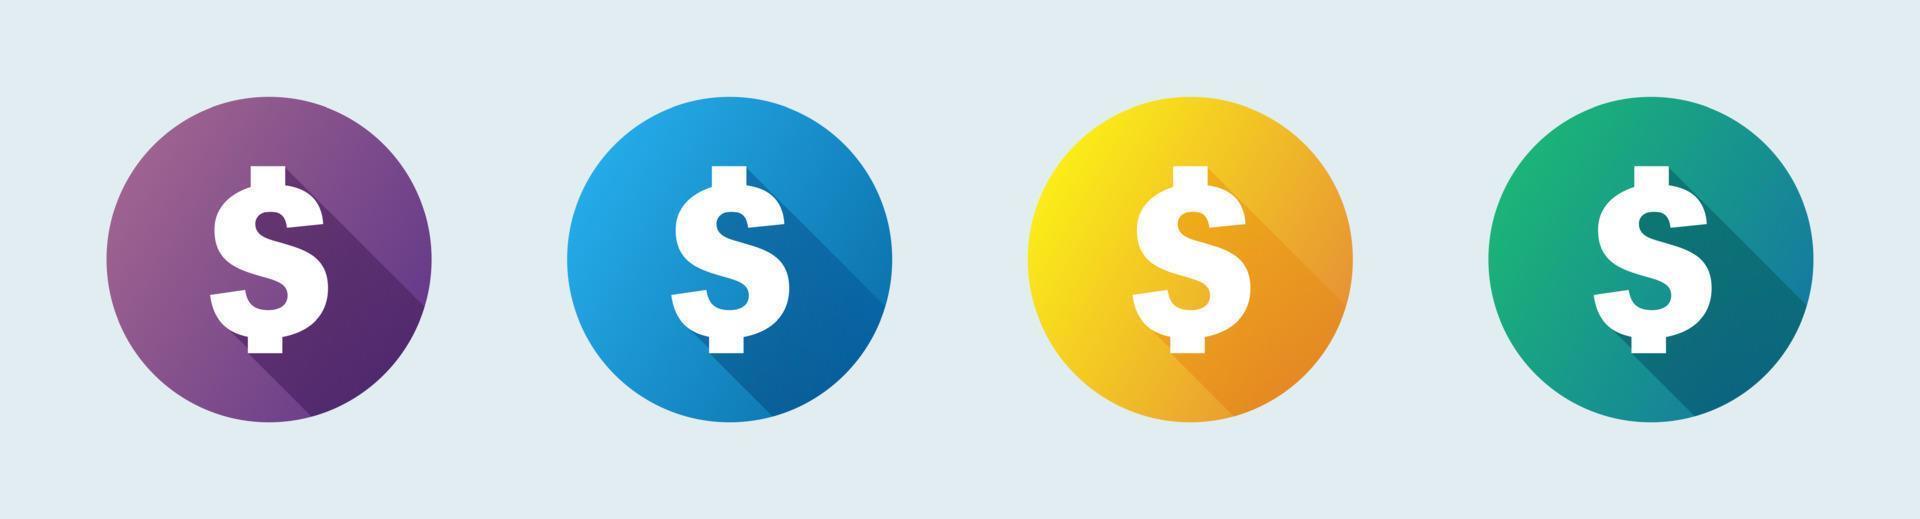 amerikansk dollarvaluta eller dollarsymbol platt ikon för appar och webbplatser. vektor